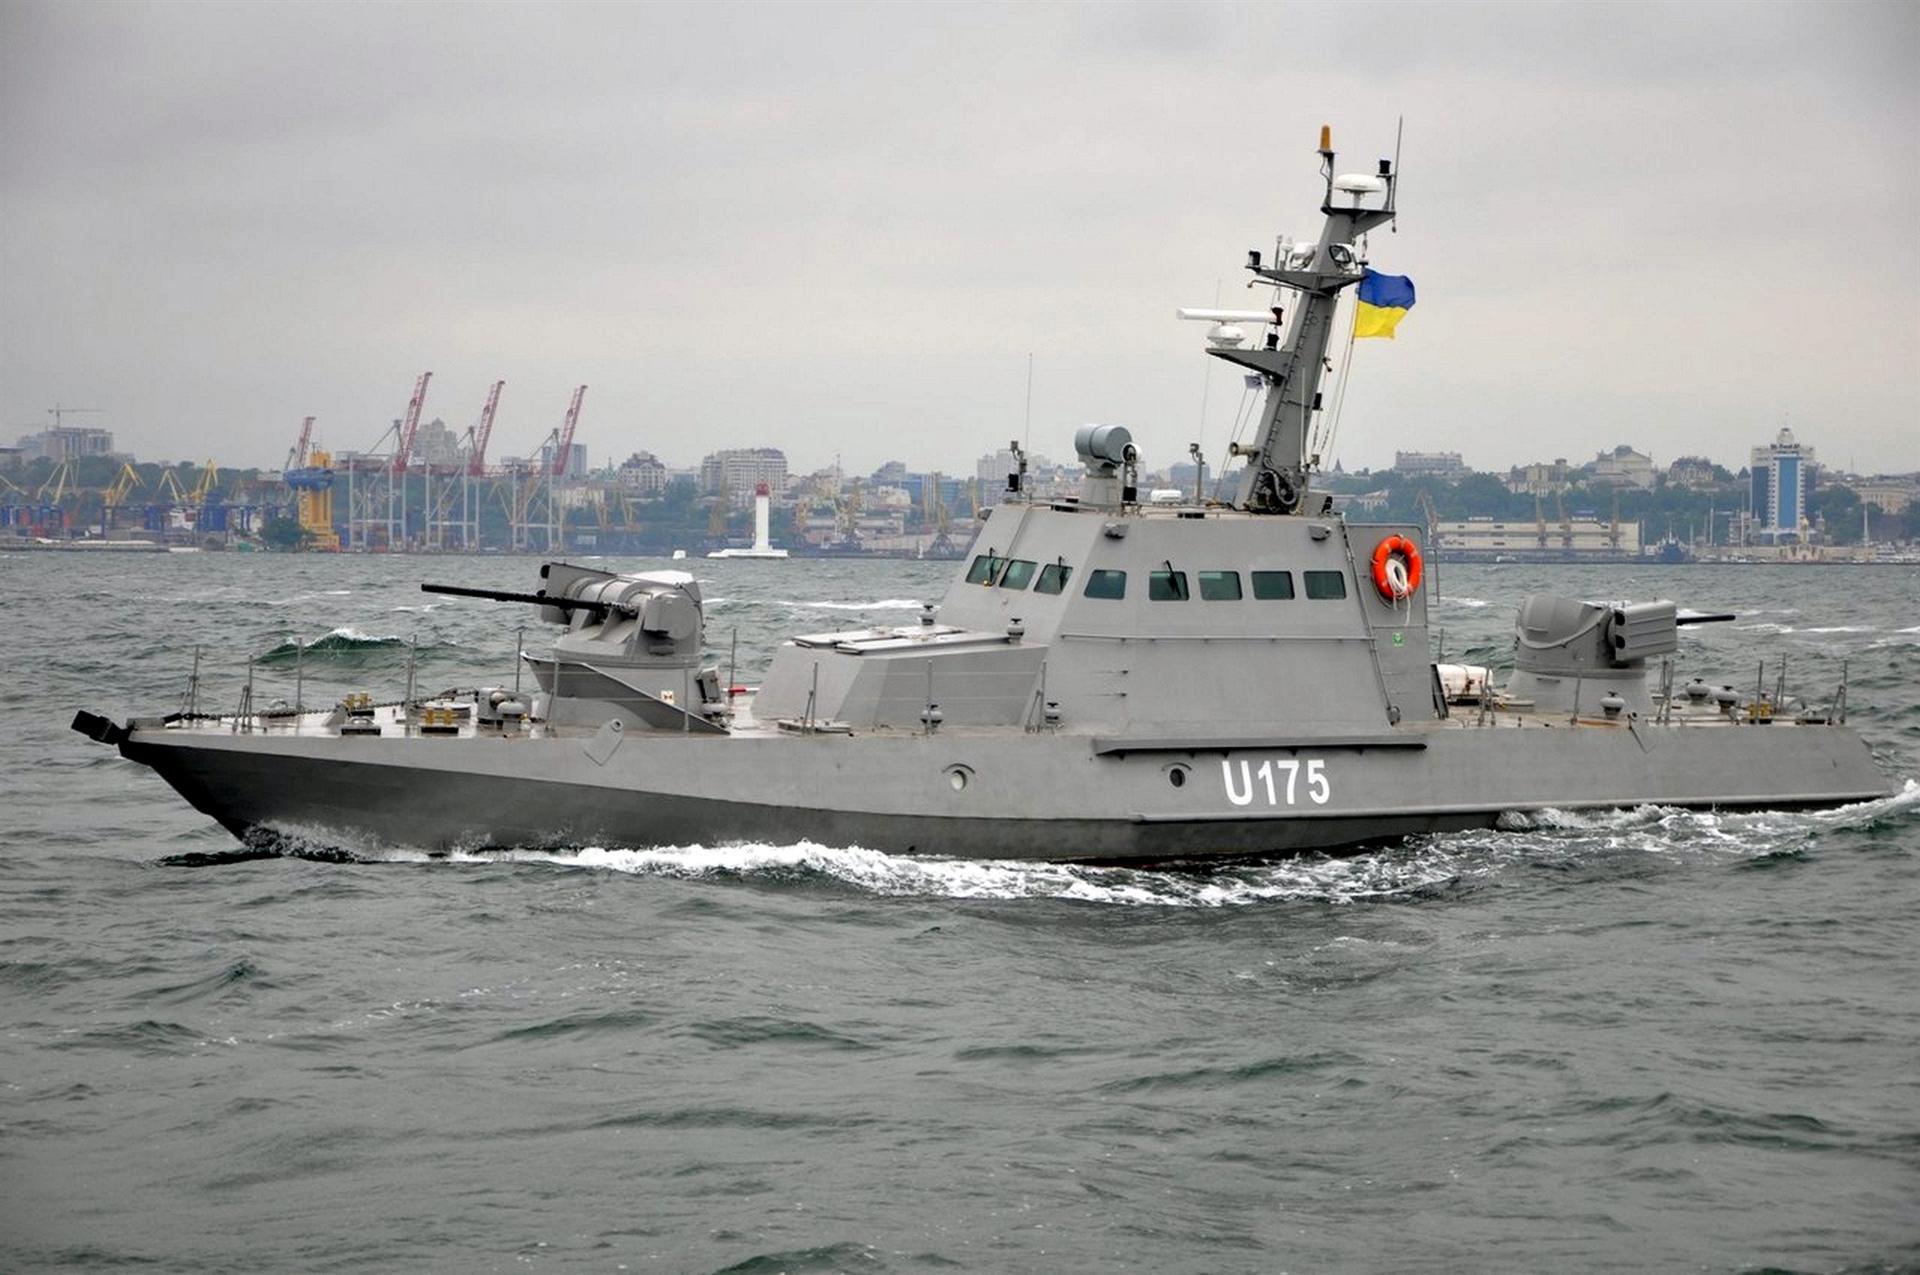 Μόσχα: Τα ουκρανικά σκάφη  δεν υπέβαλλαν αίτημα για να περάσουν – Είχαν τα πυροβόλα τους σε θέση βολής